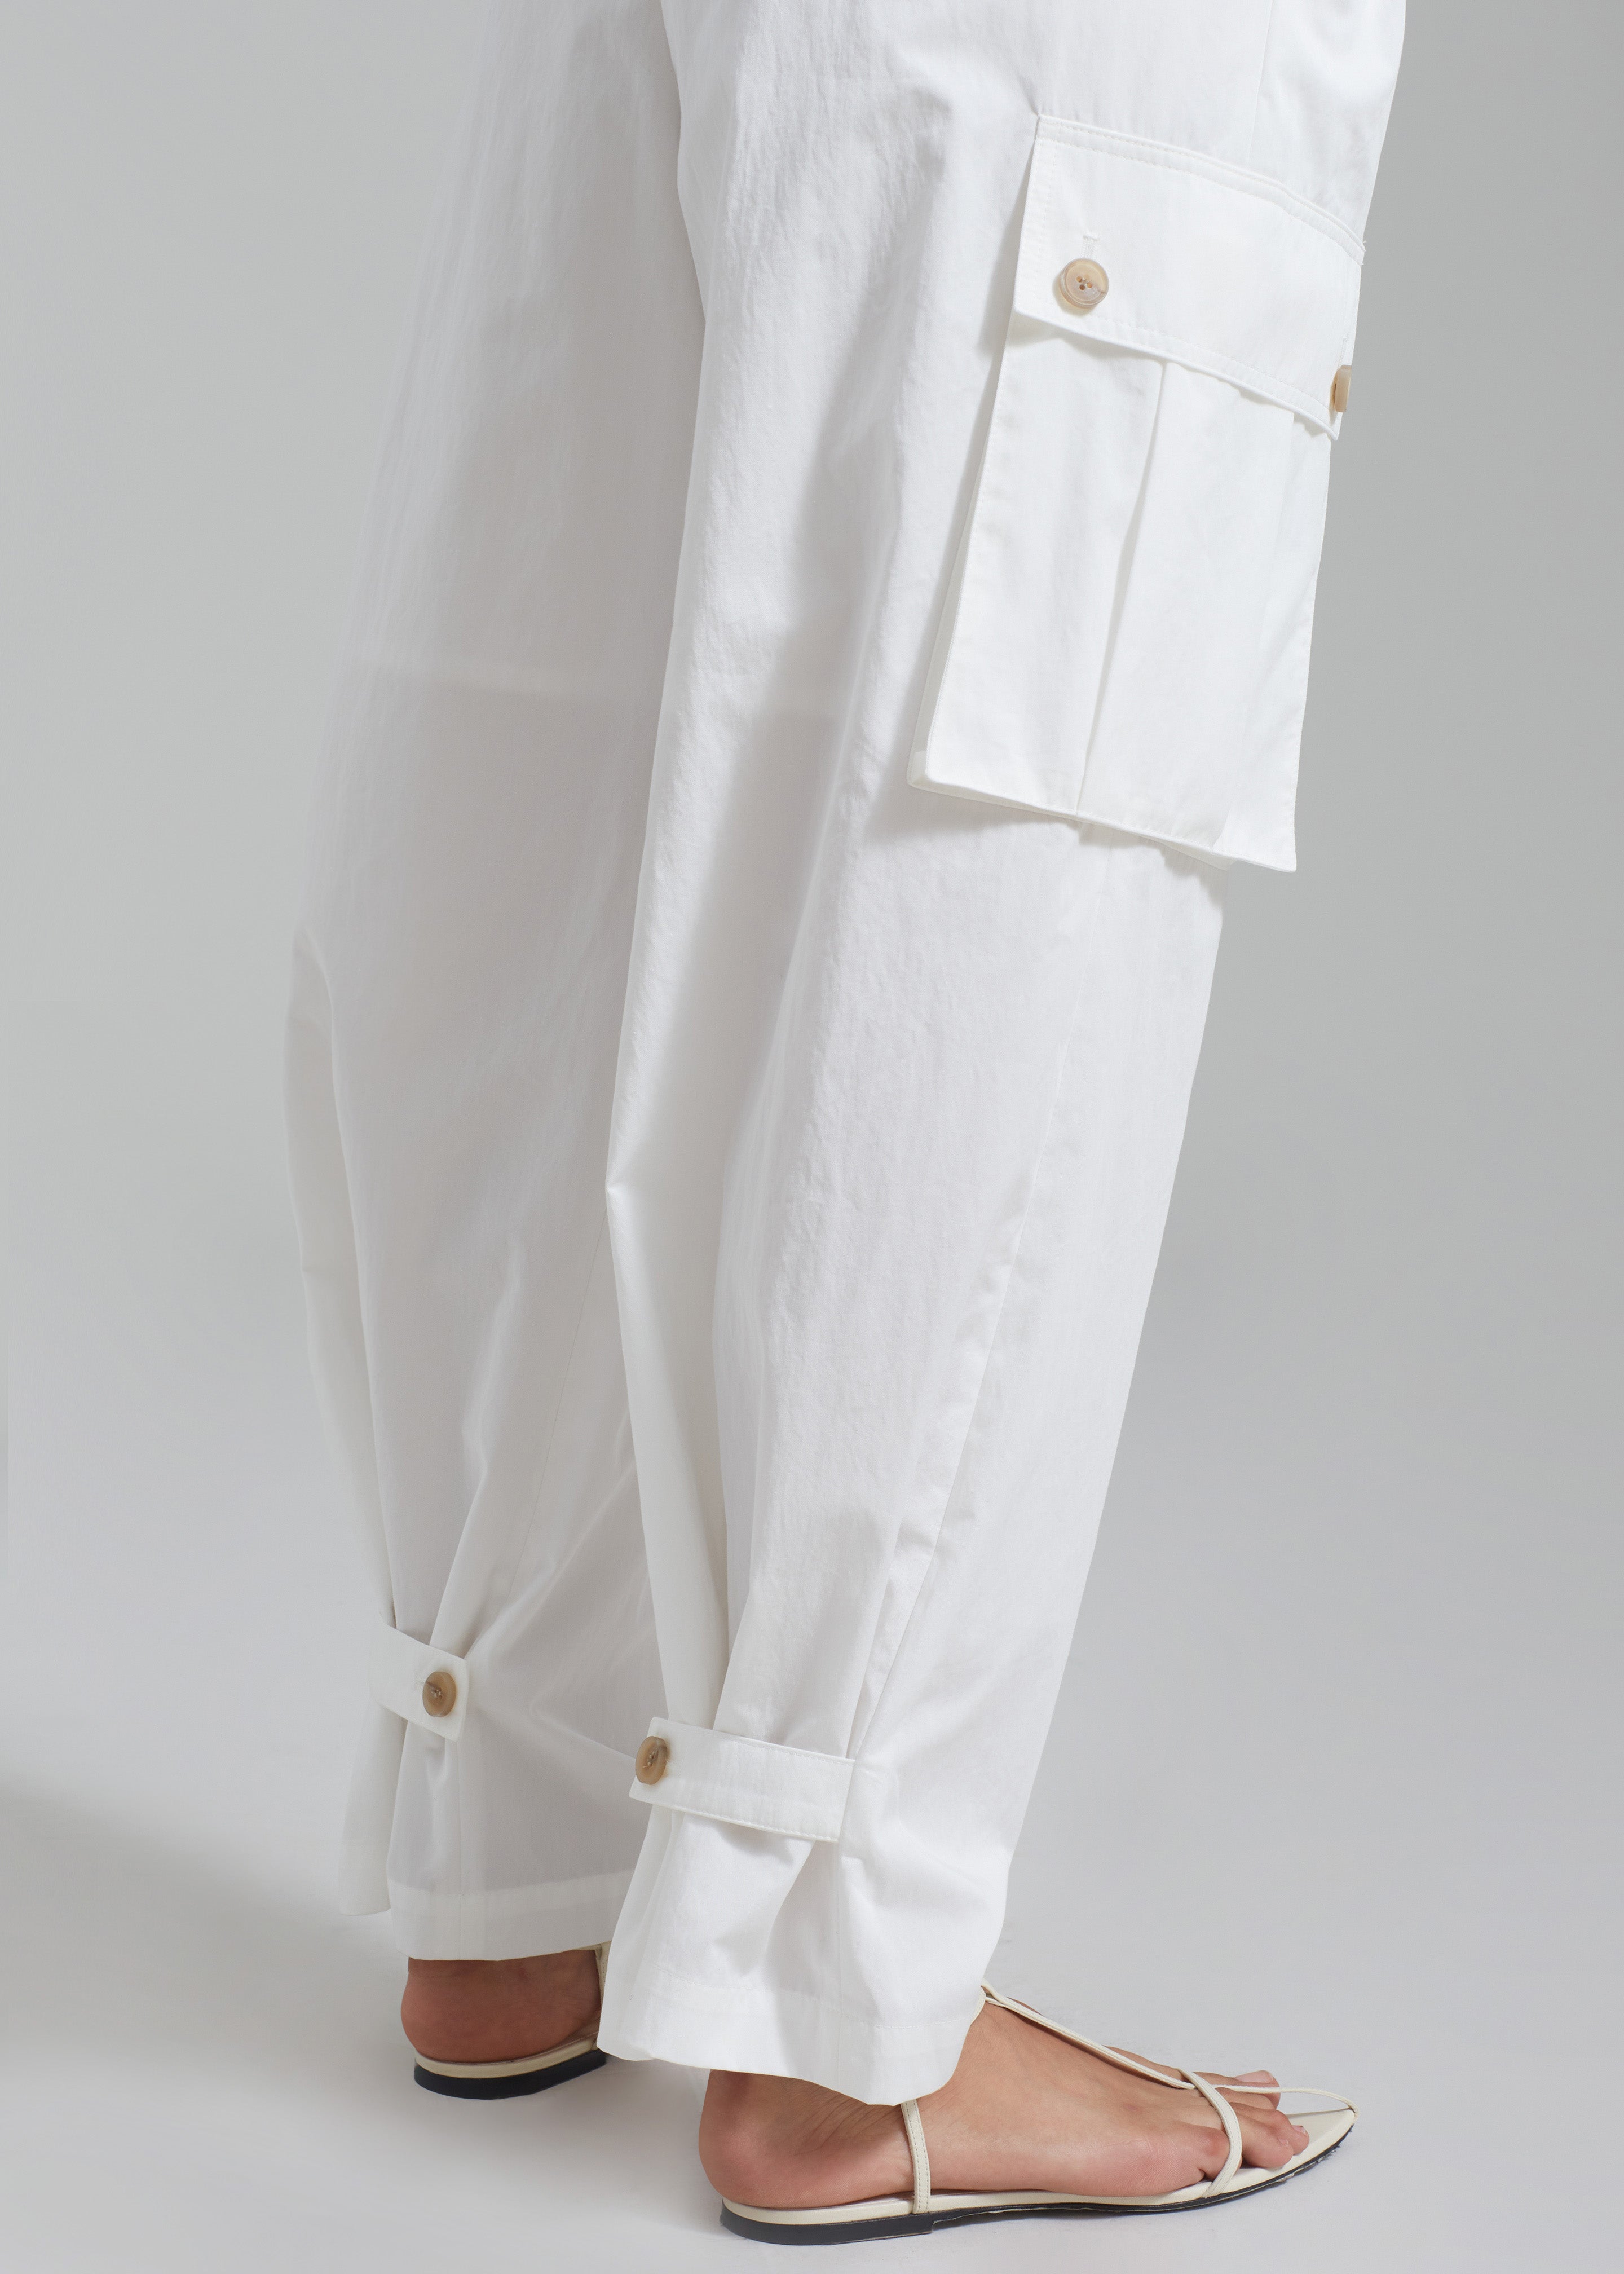 Emily Cargo Pants - White - 3